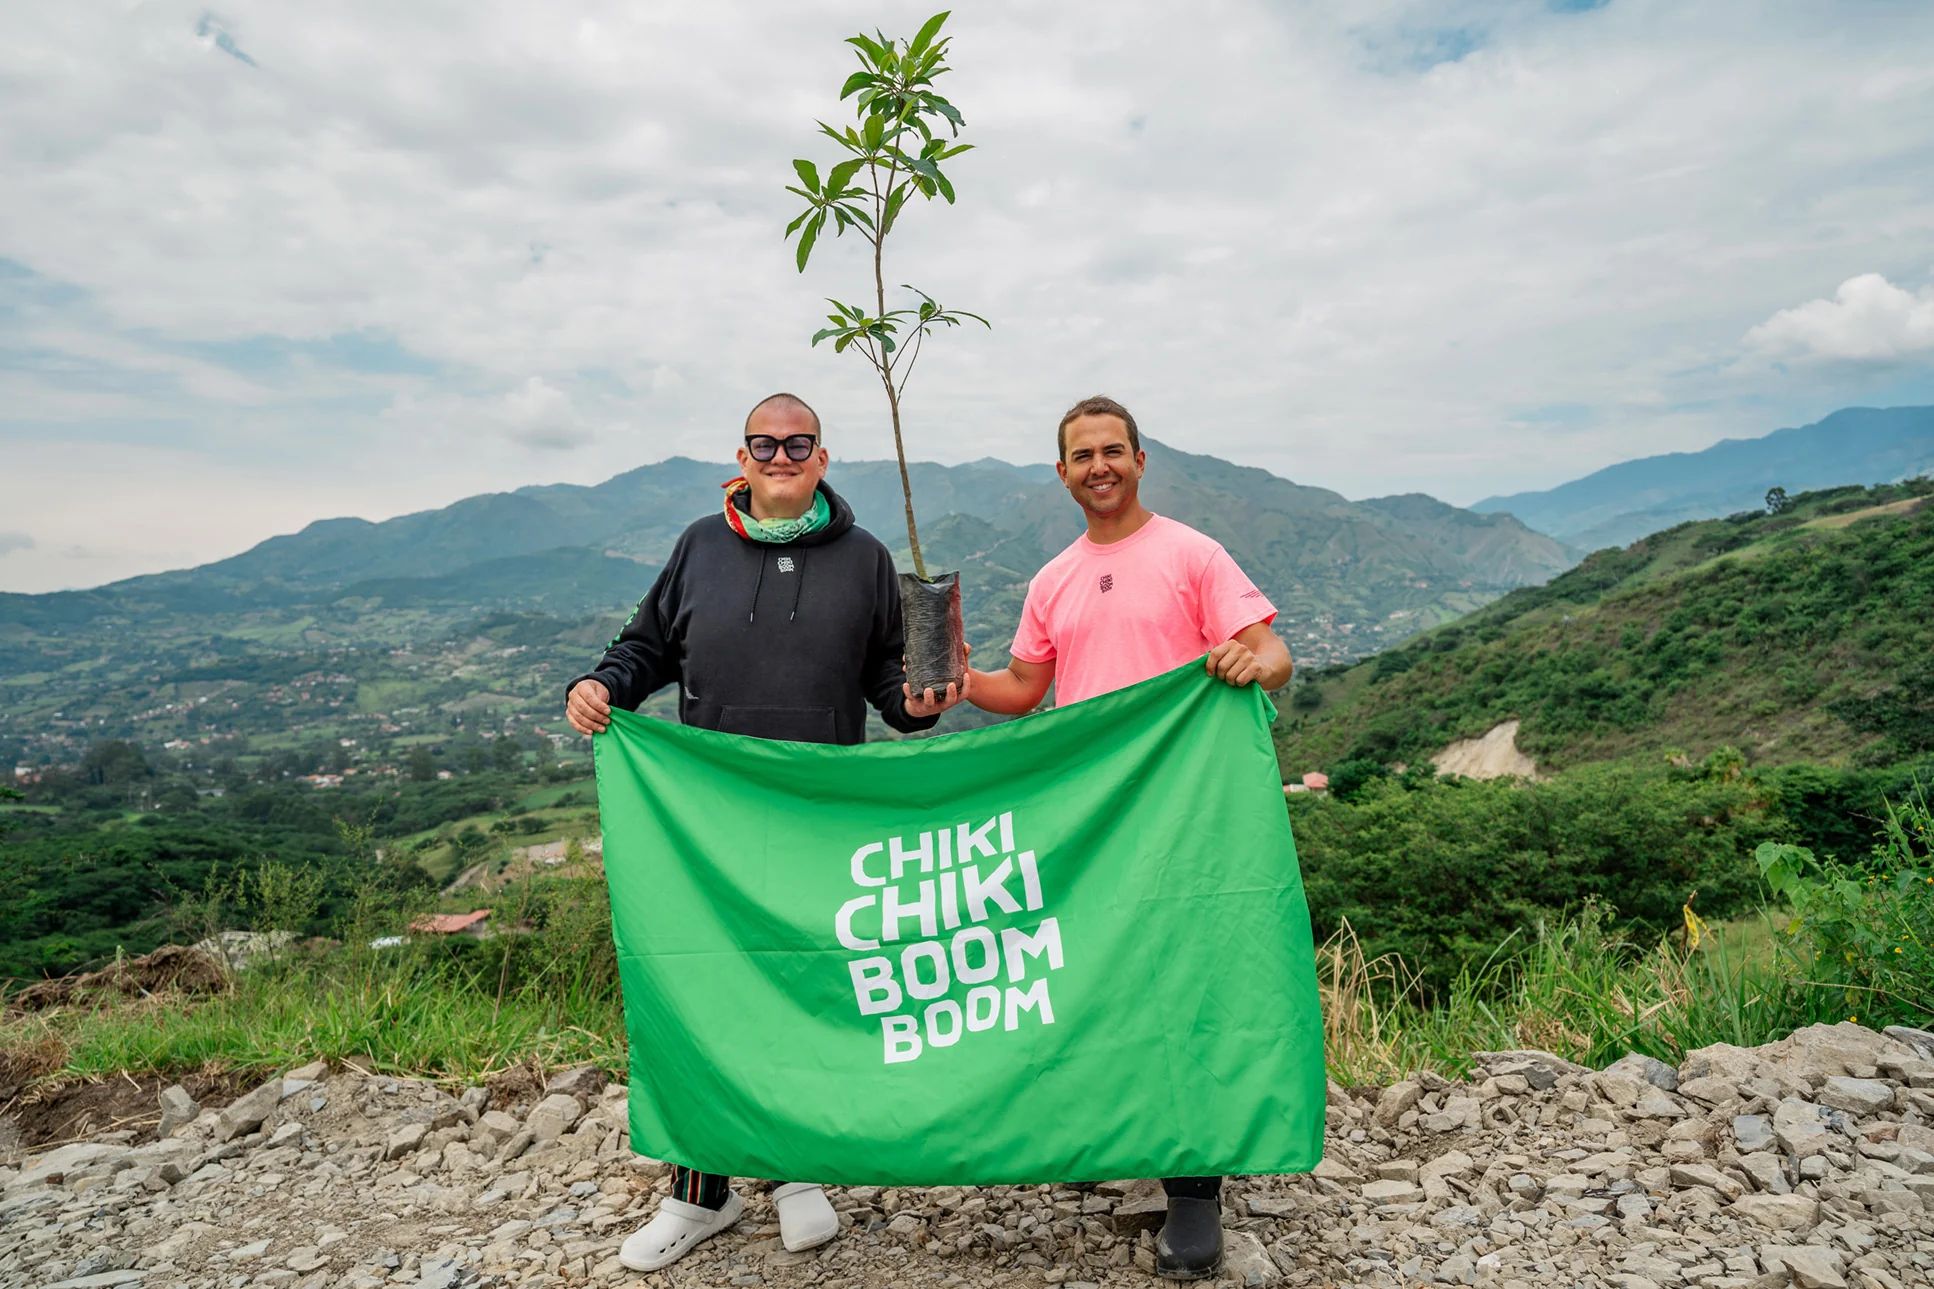 Chiki Chiki Boom Booms grundare håller en skylt och ett litet träd på toppen av ett berg